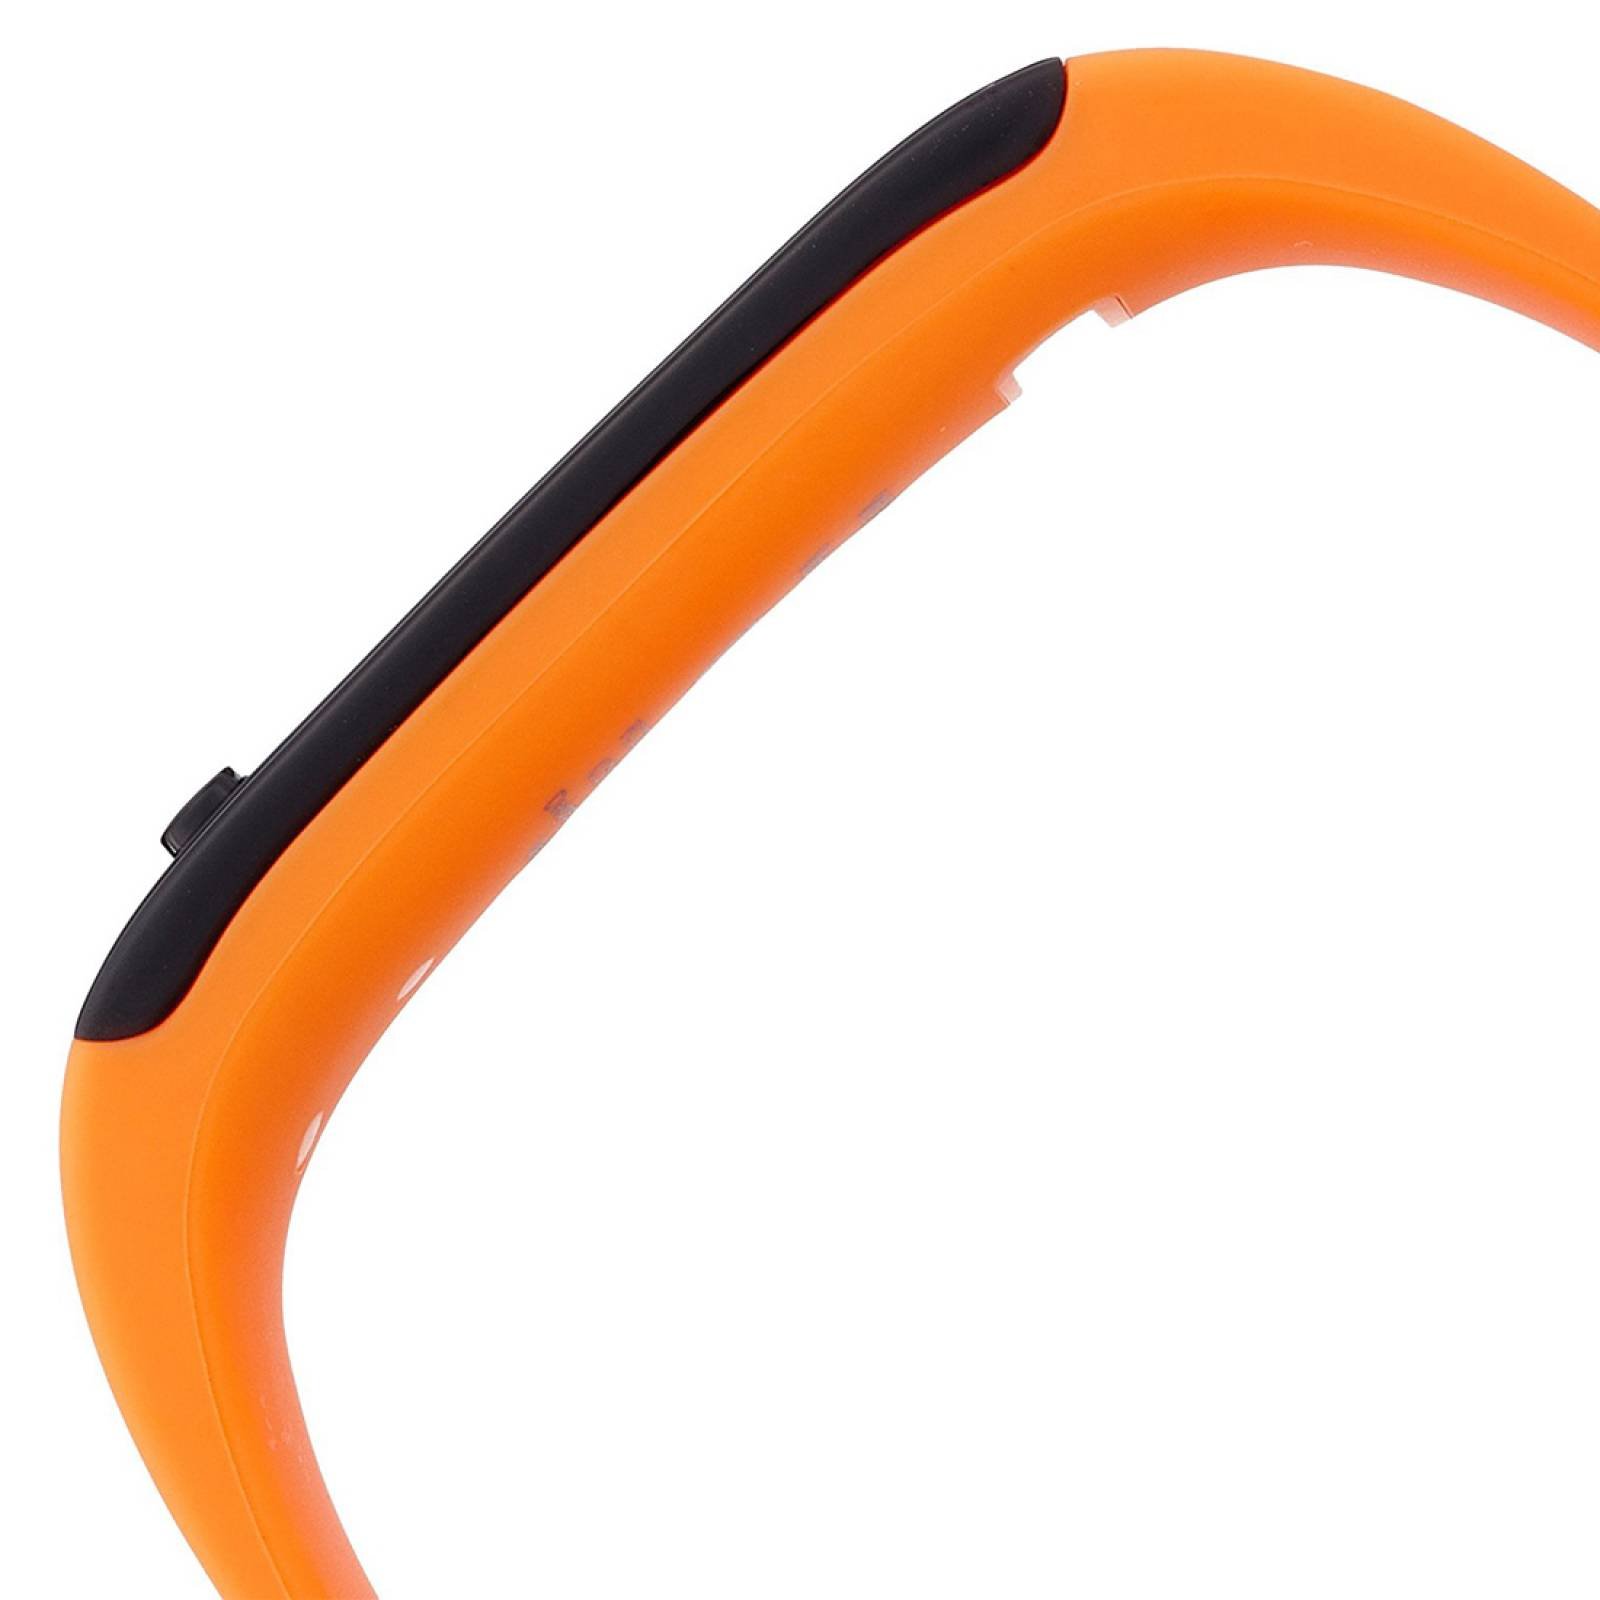 Pulsera Reloj Fitness Digital ZeFit MyKronoz Sport Naranja